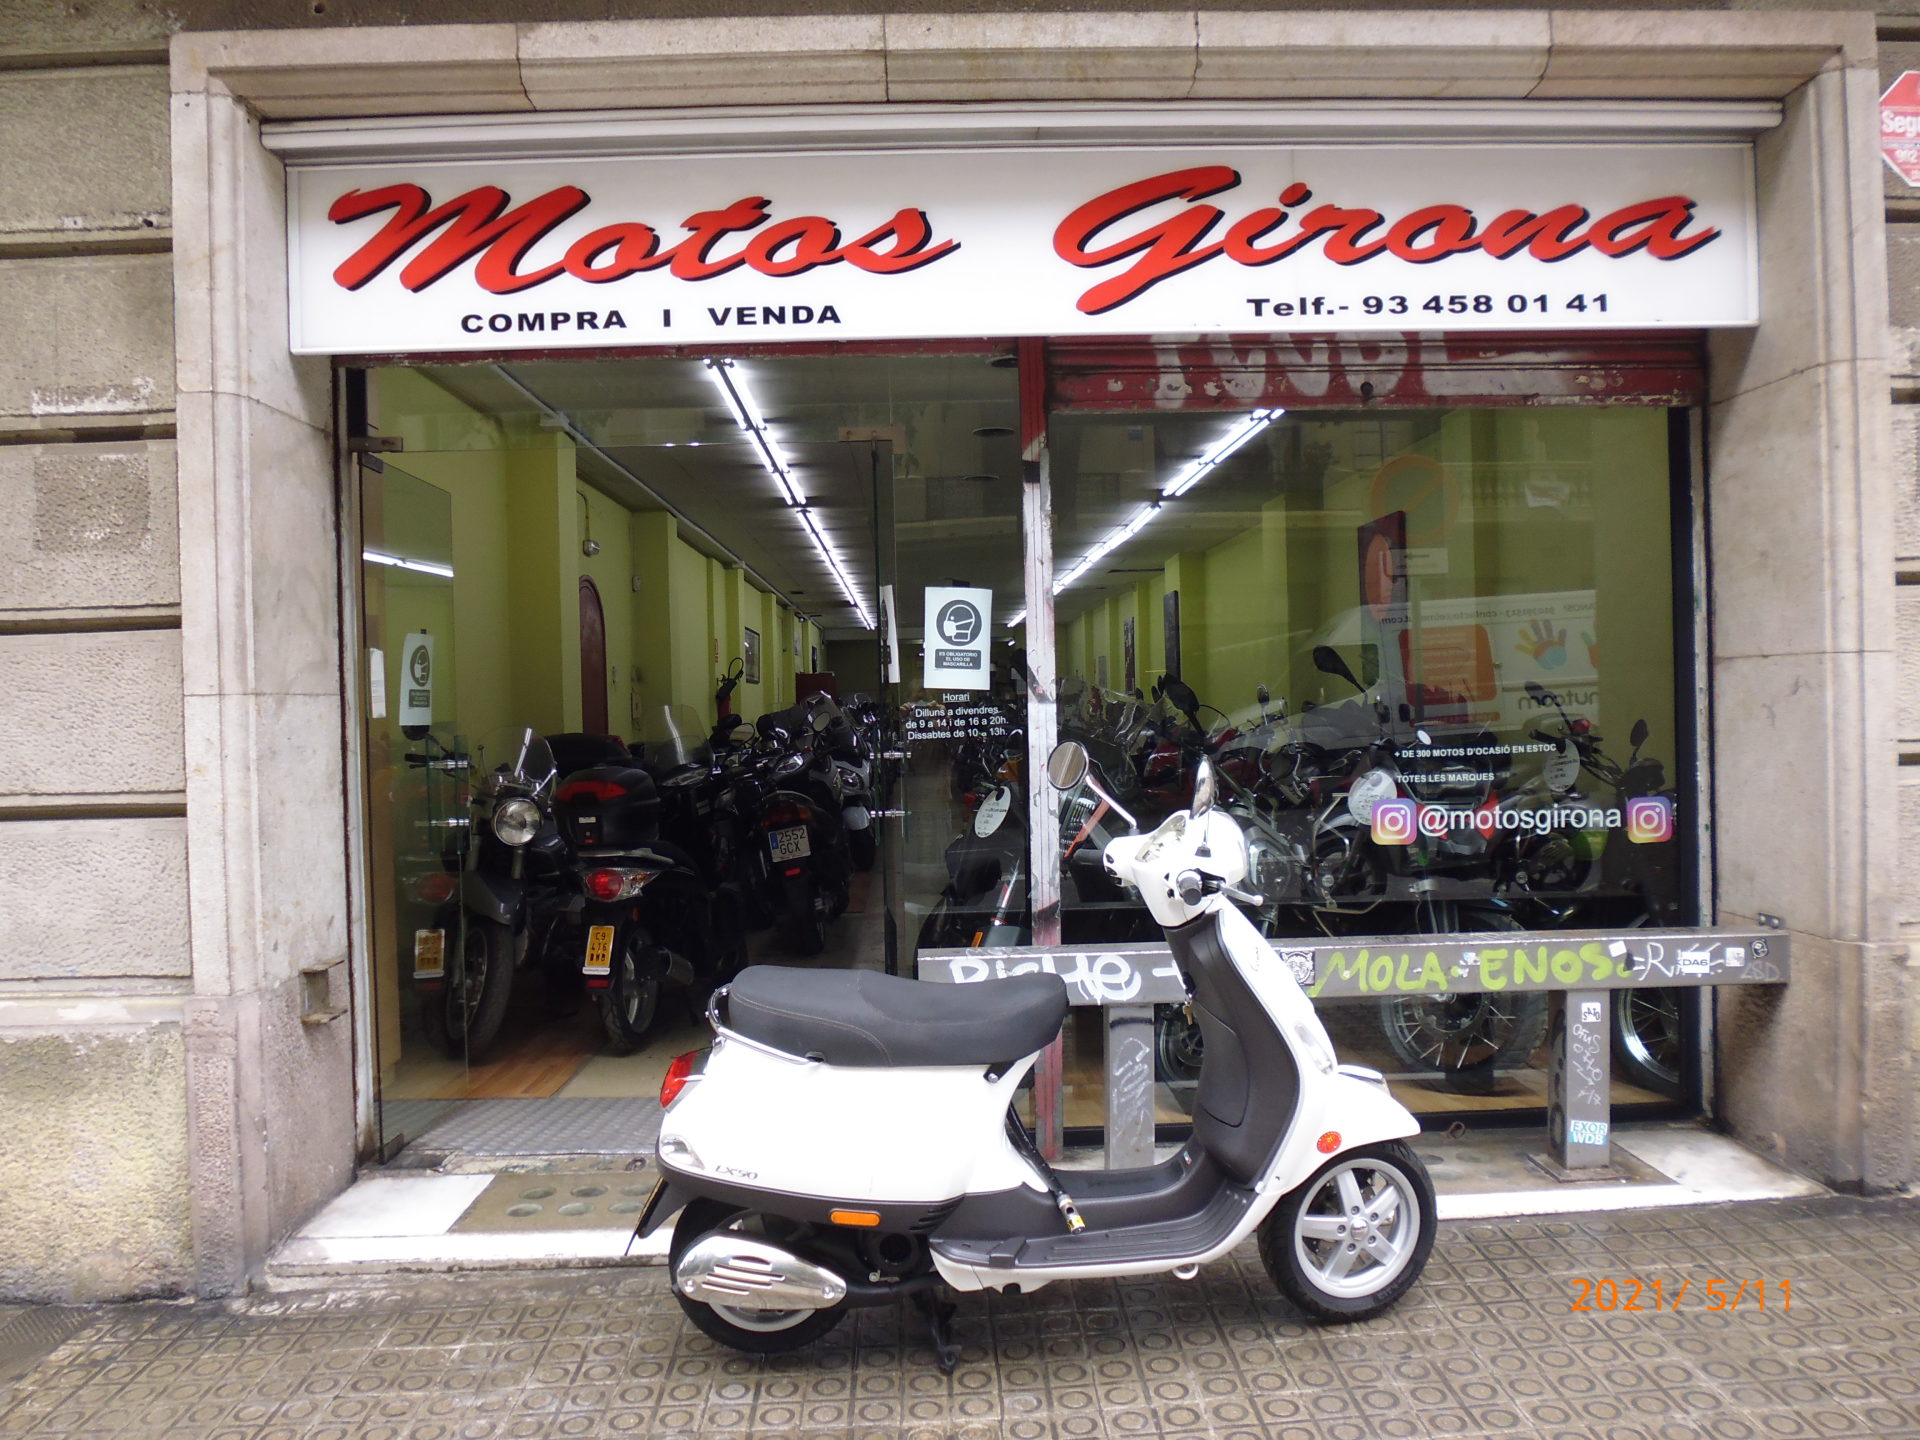 PIAGGIO VESPA LX 50 - Motos Girona. 4 tiendas en Barcelona 